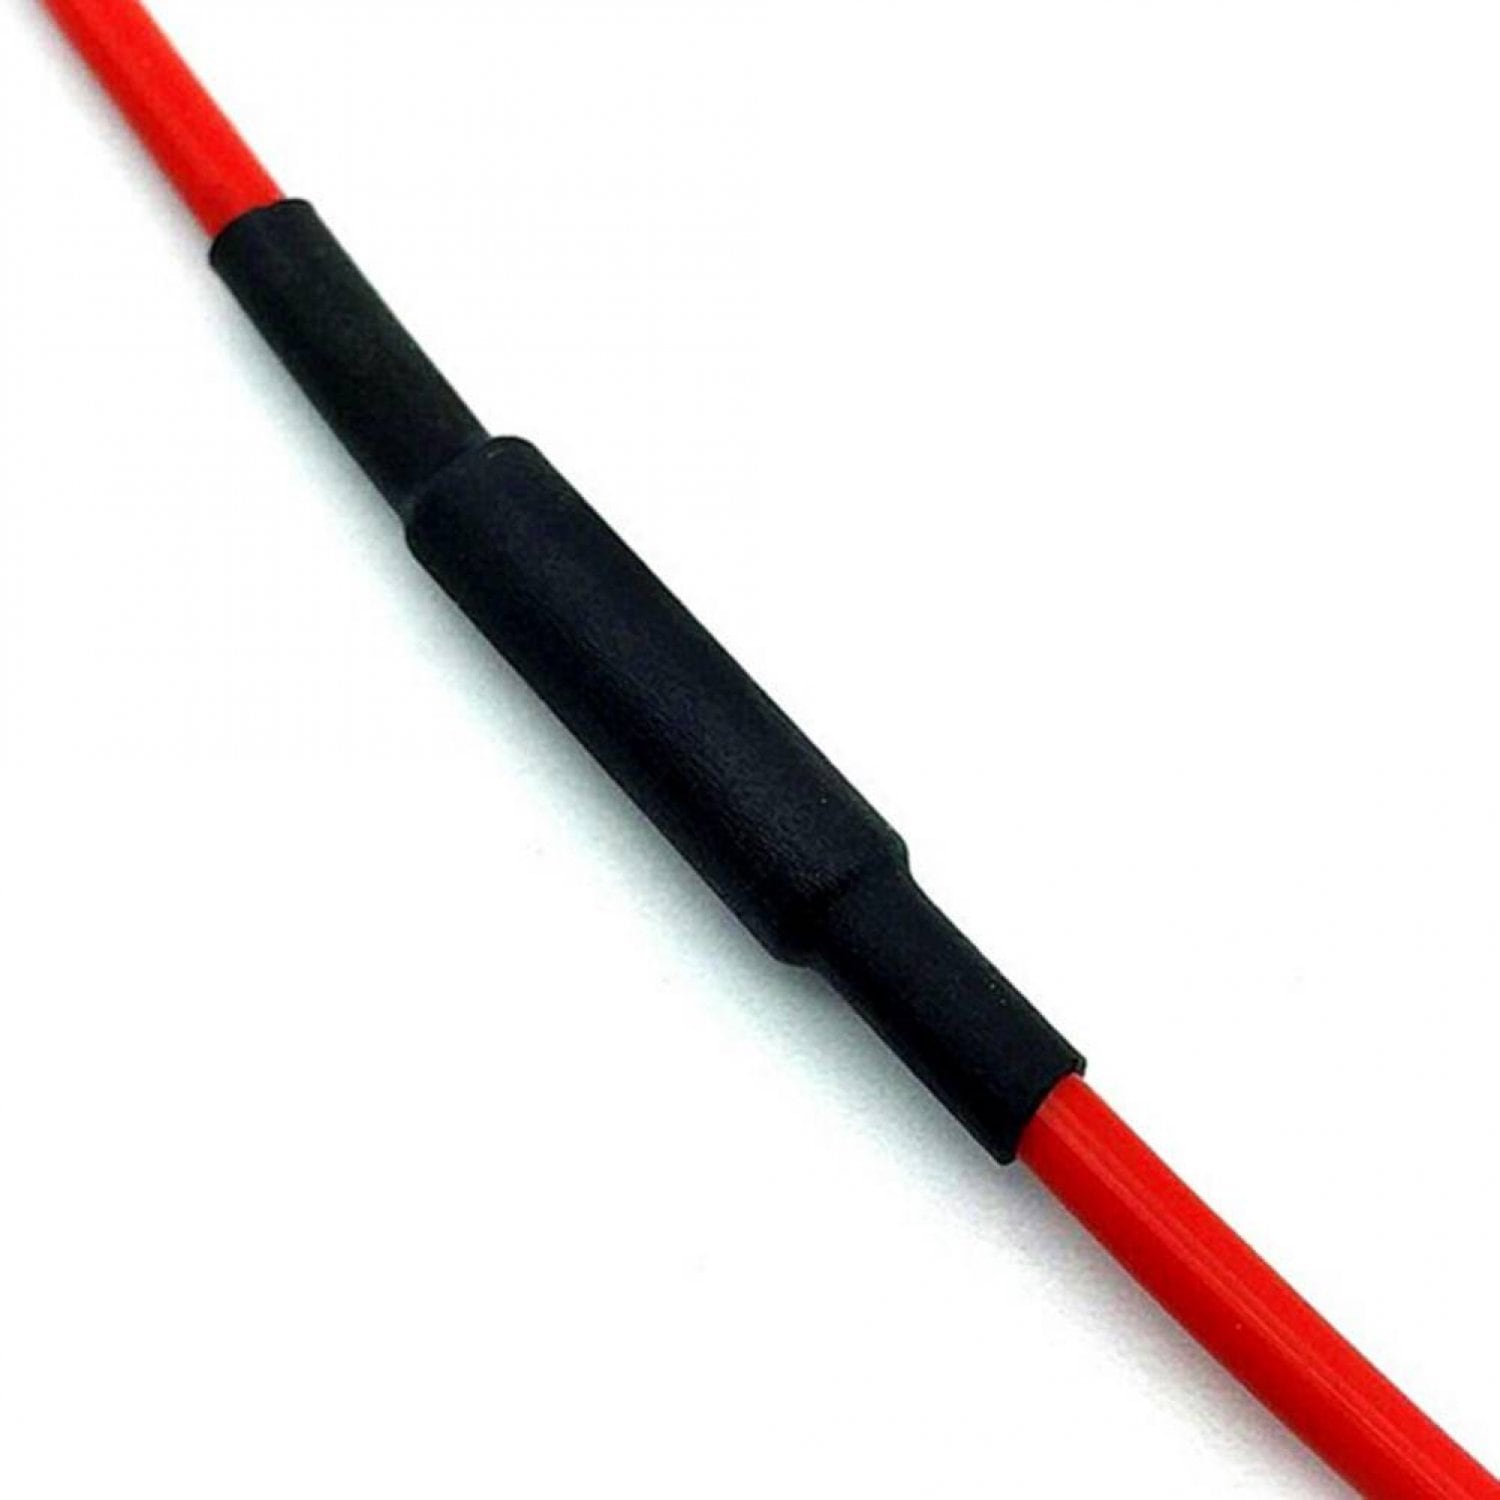 Нагревательный кабель 33 Ом 10 метров 2 мм тефлон 12k